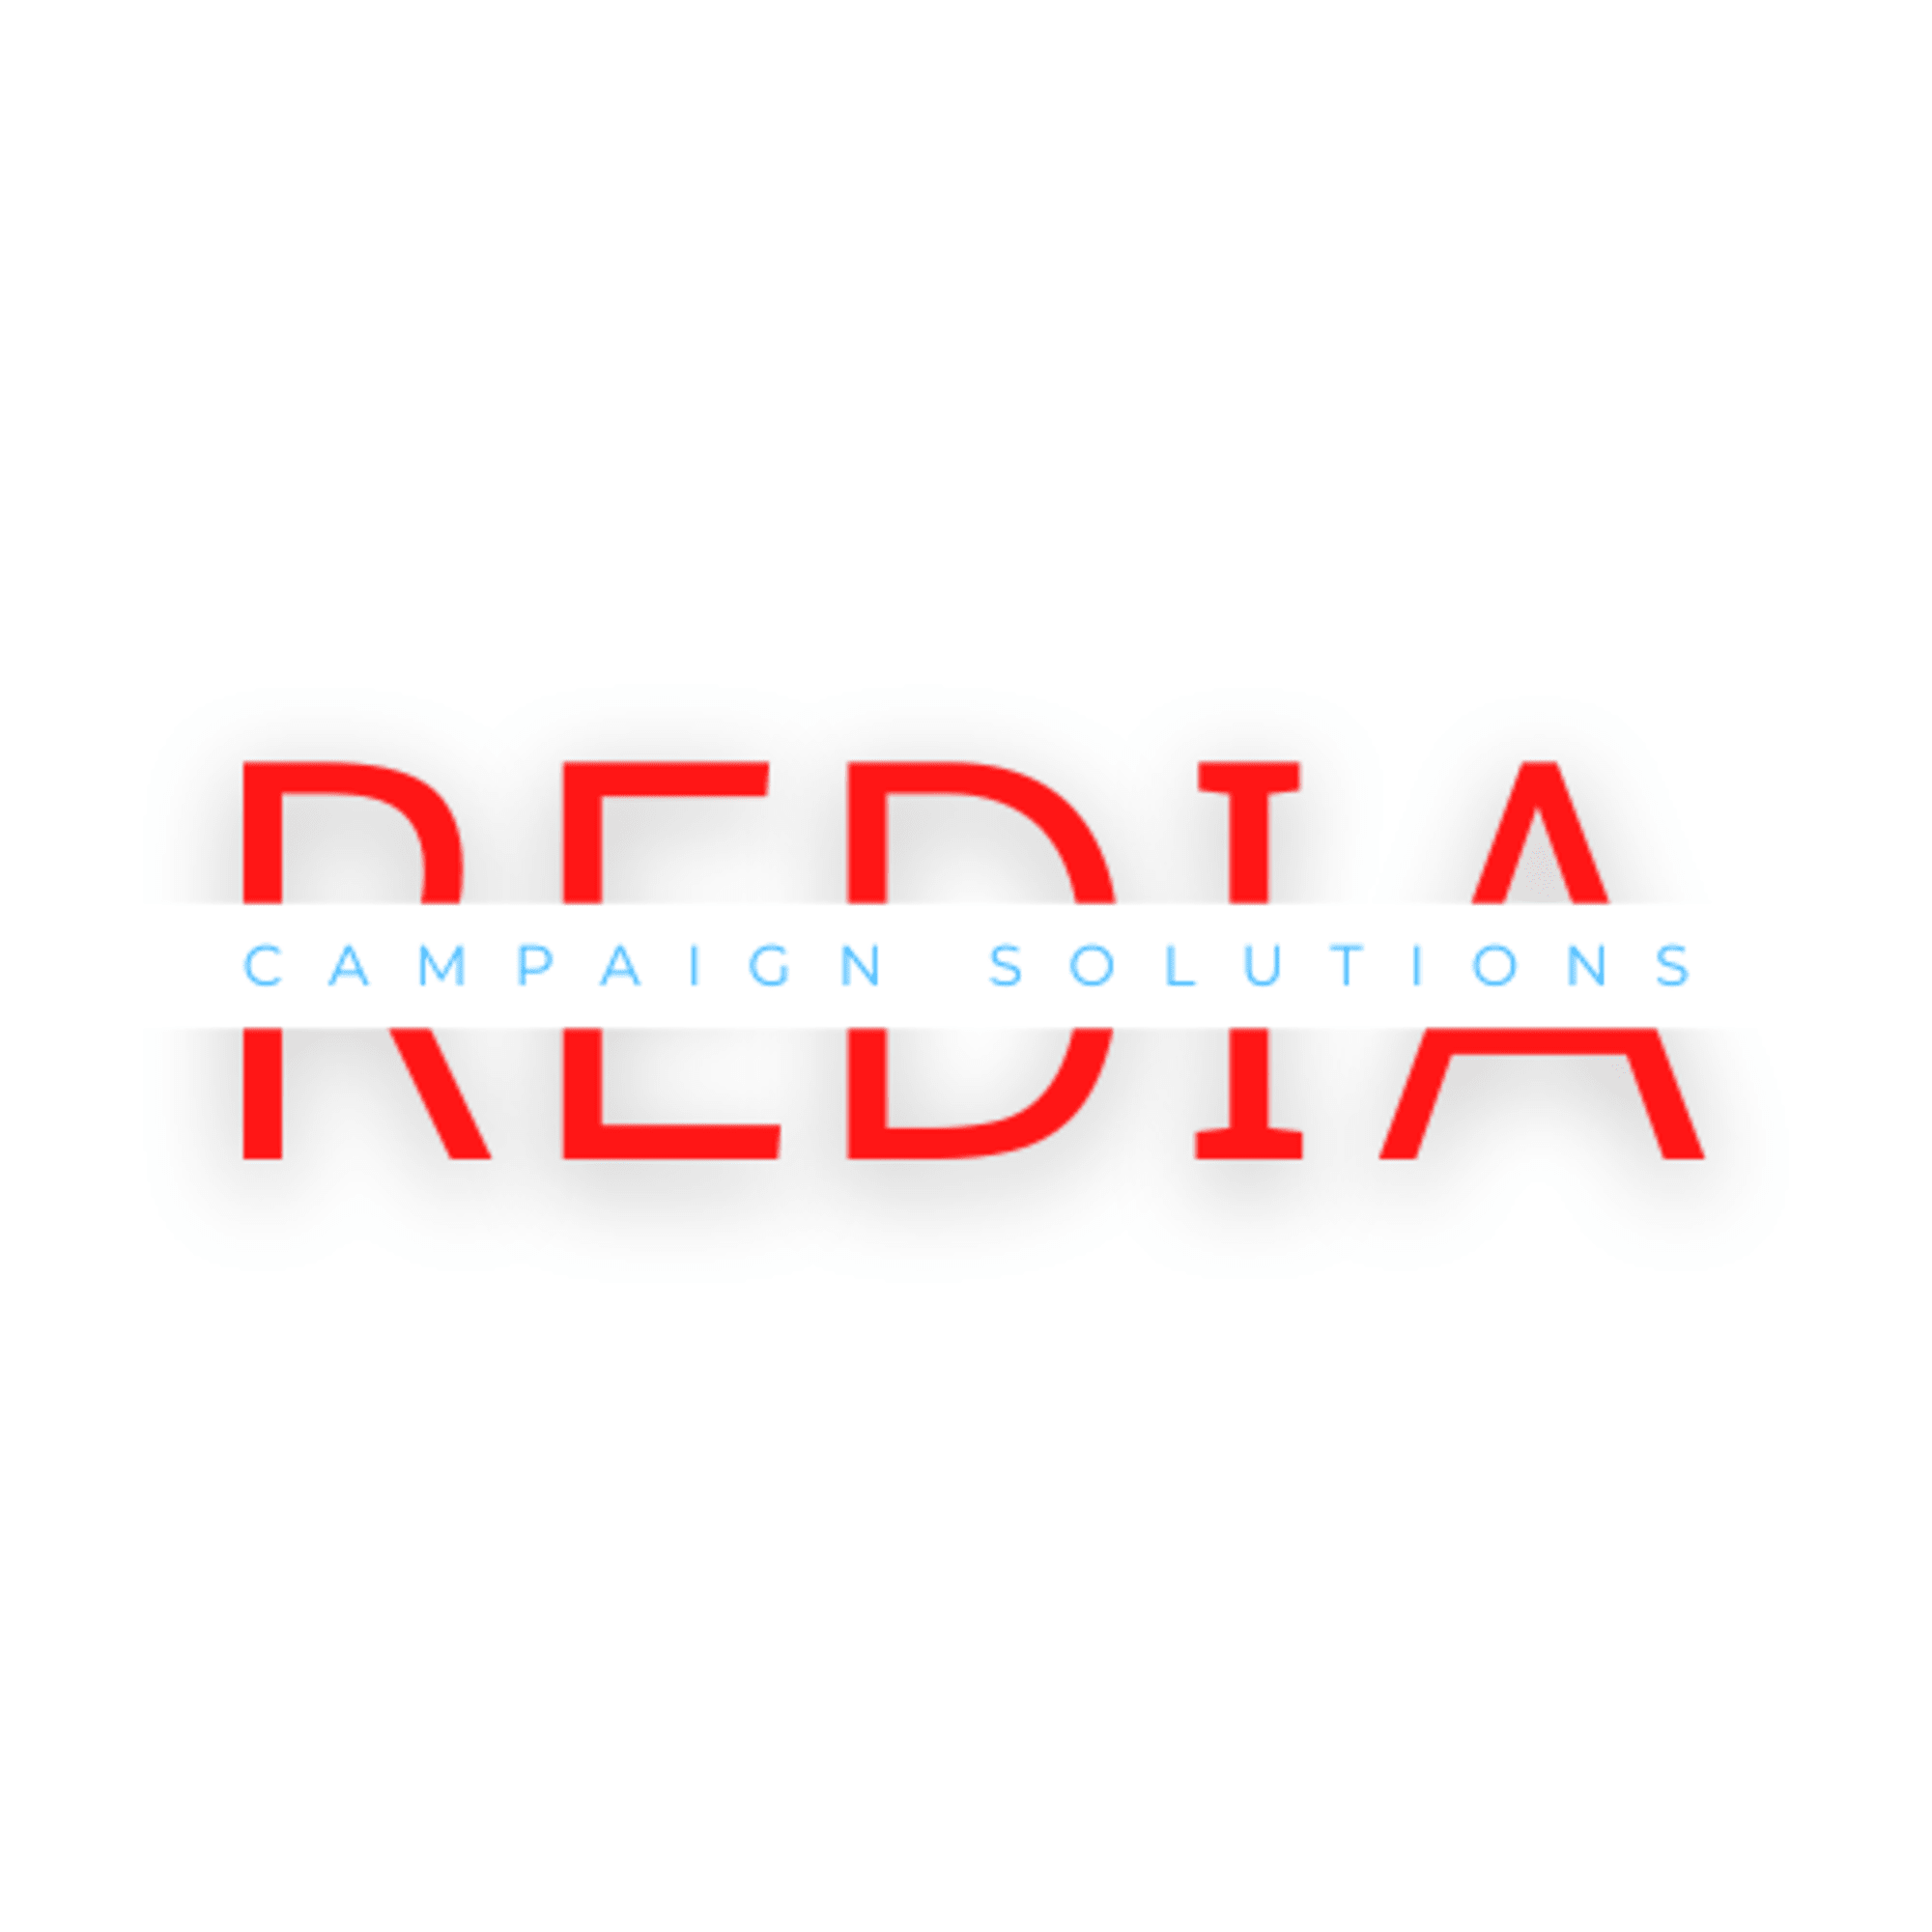 REDIA-5.png